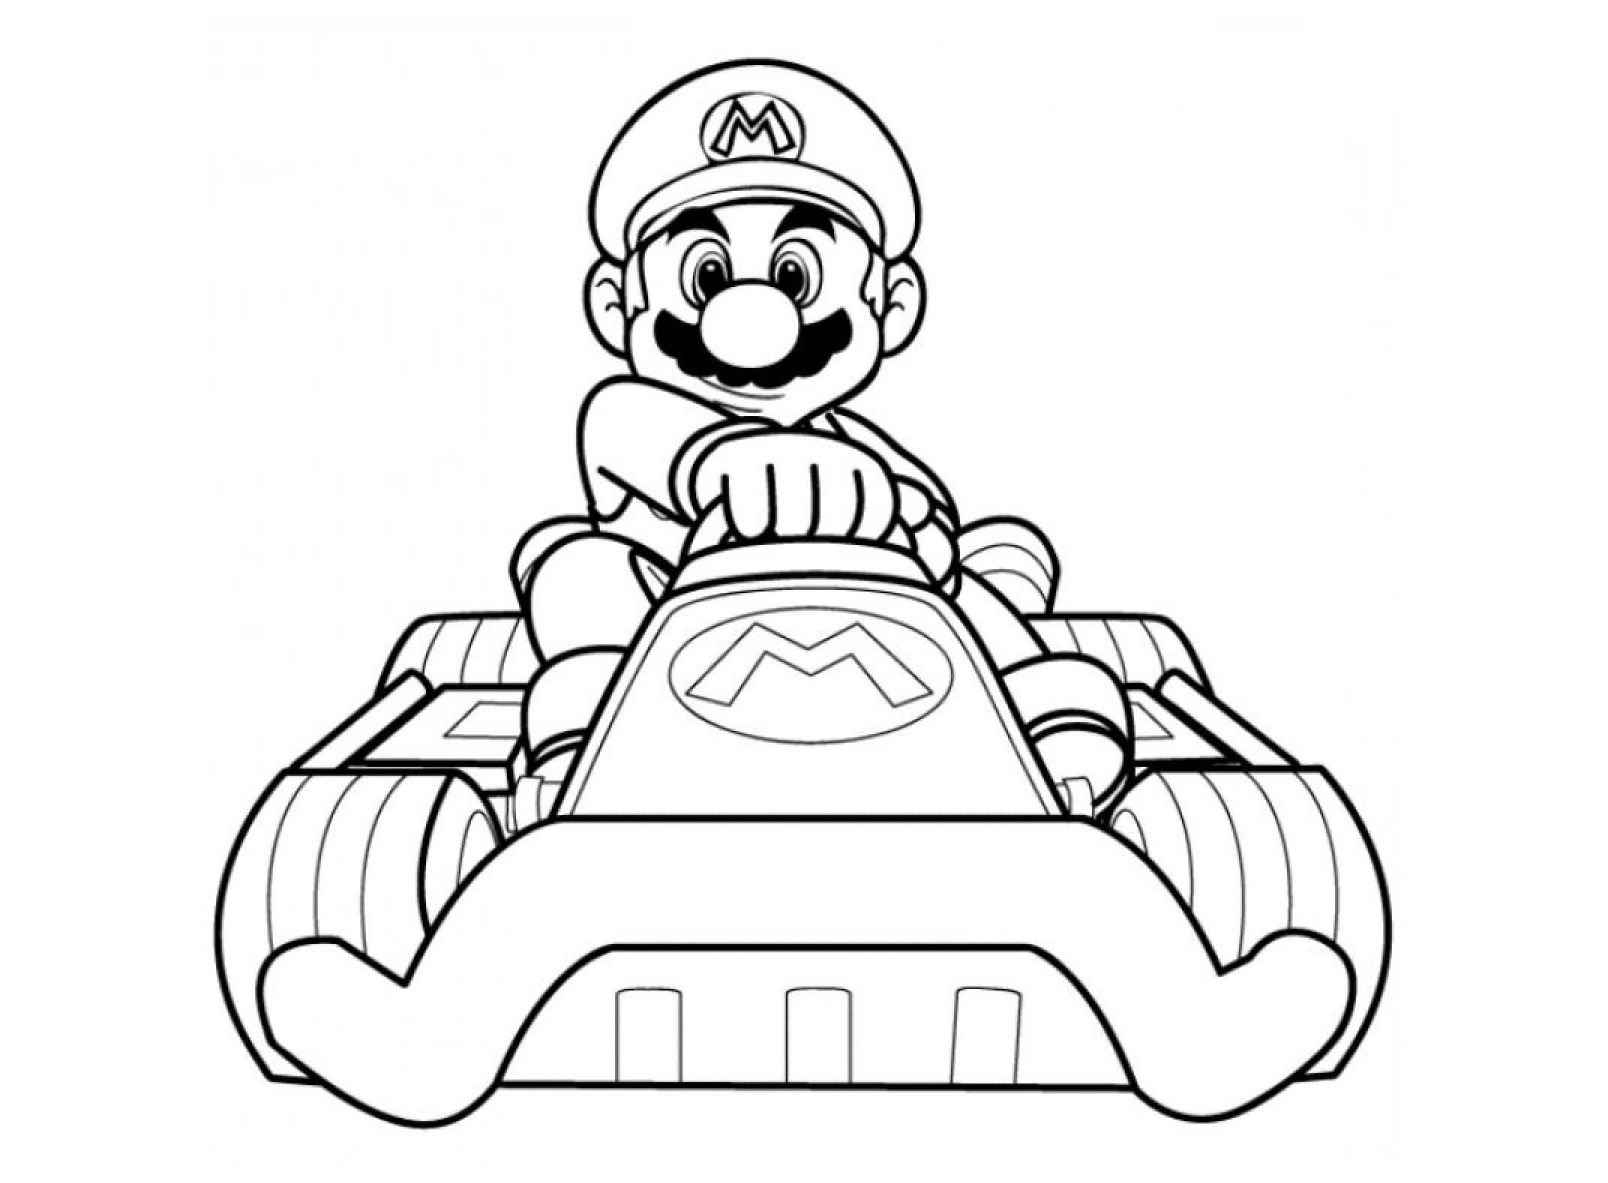 Dessin Mario Et Luigi Cool Images Coloriage Dessiner Mario Bros Bowser